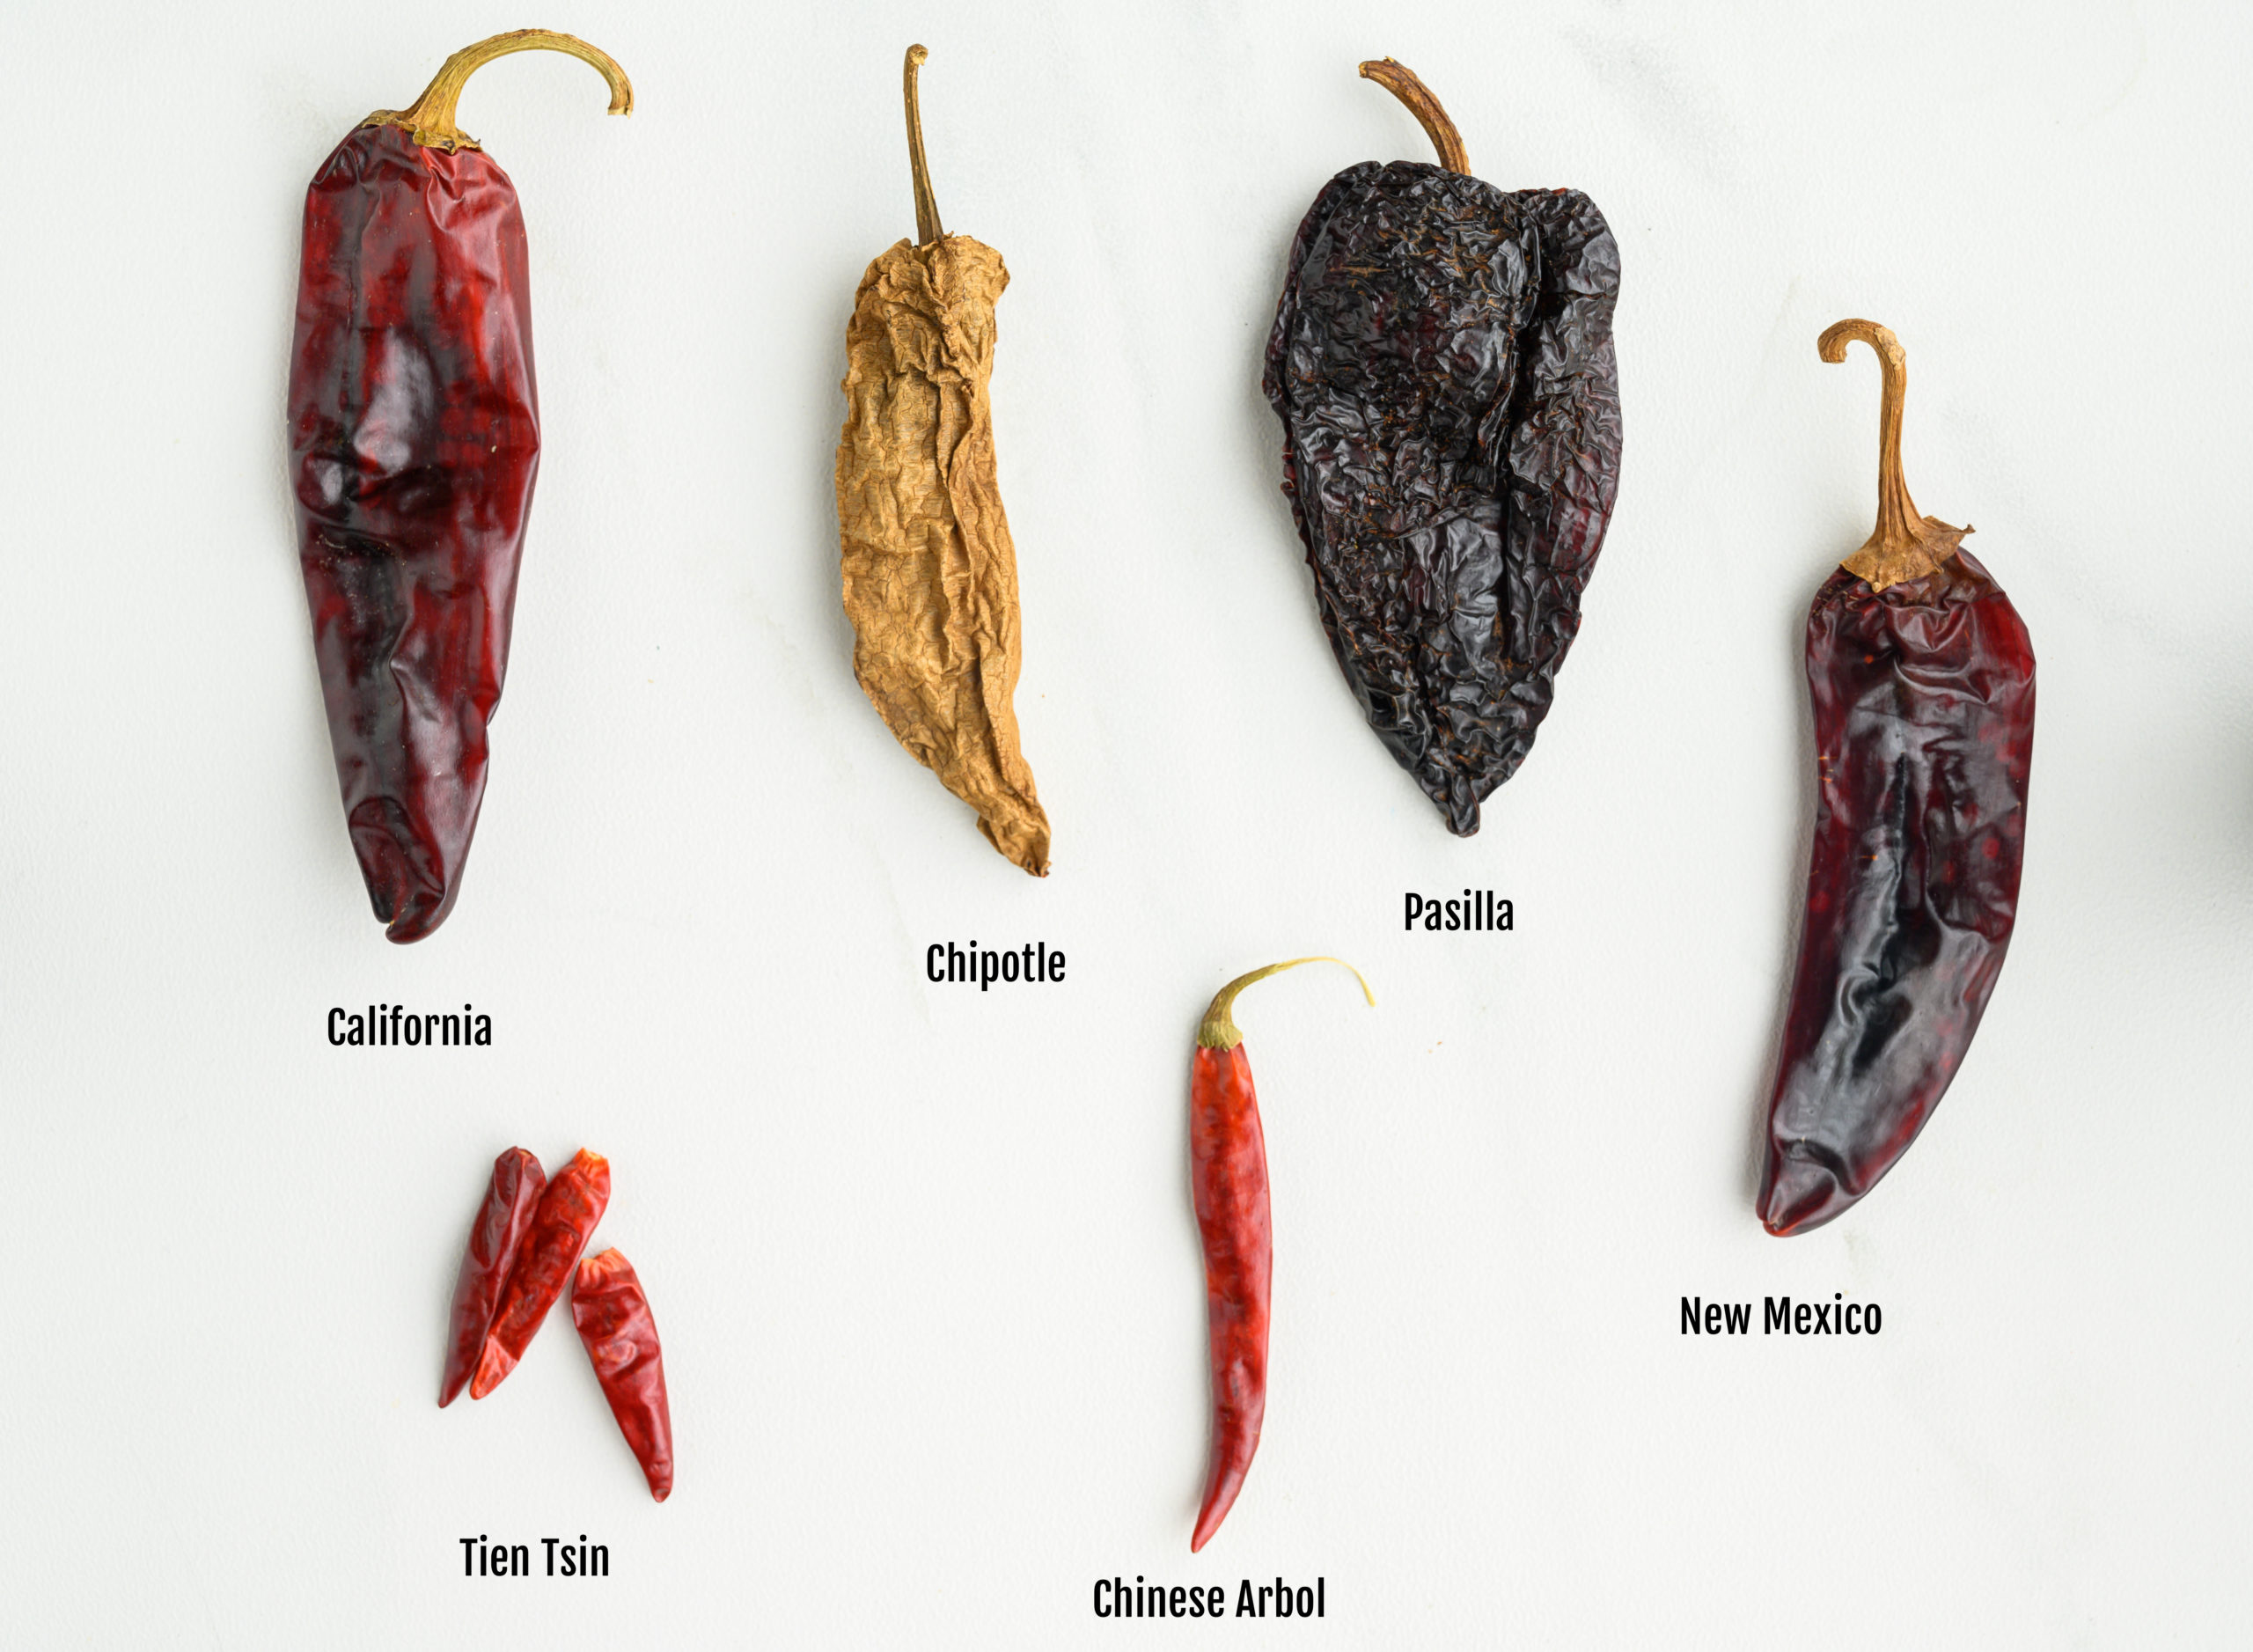 The Chili Pepper Trend